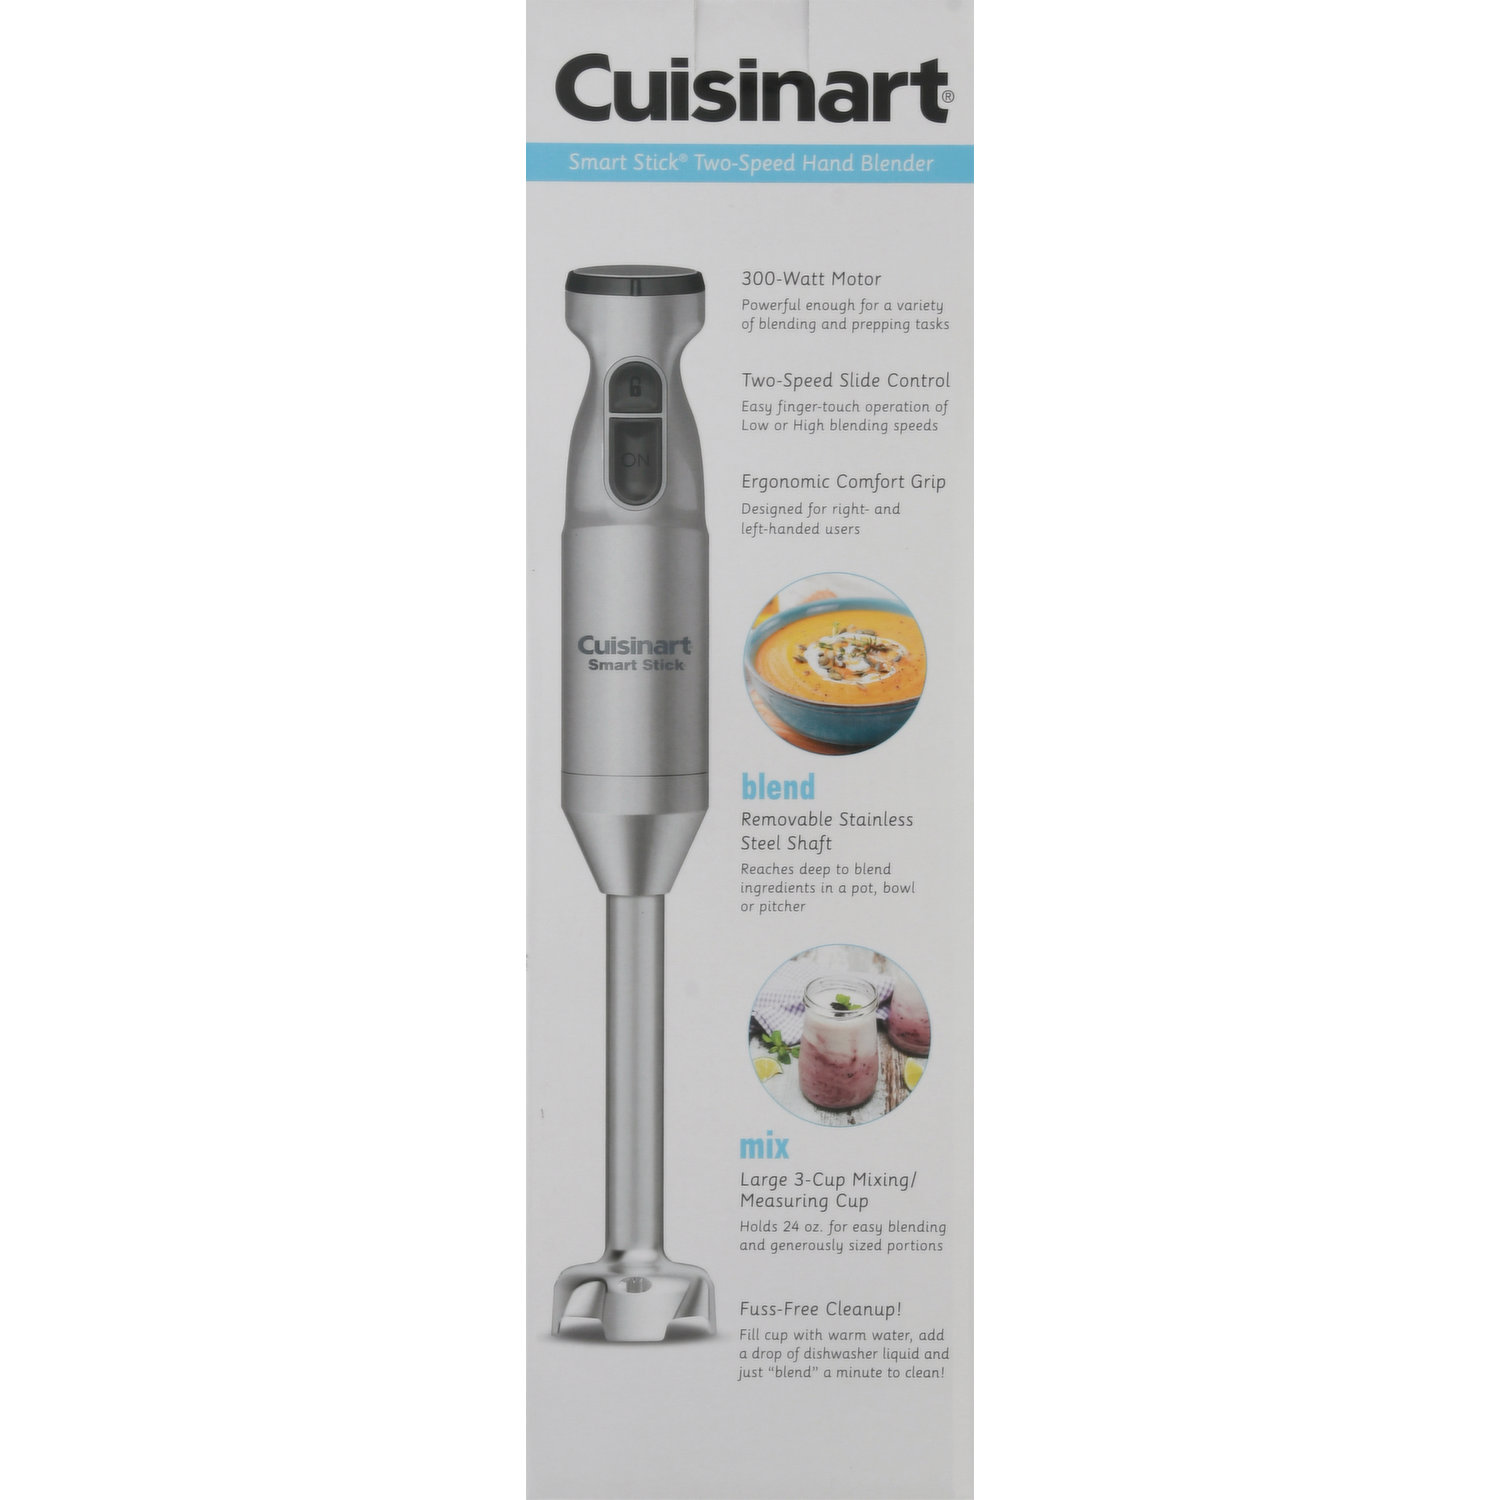 Cuisinart Smart Stick Hand Blender & Mixing Cup